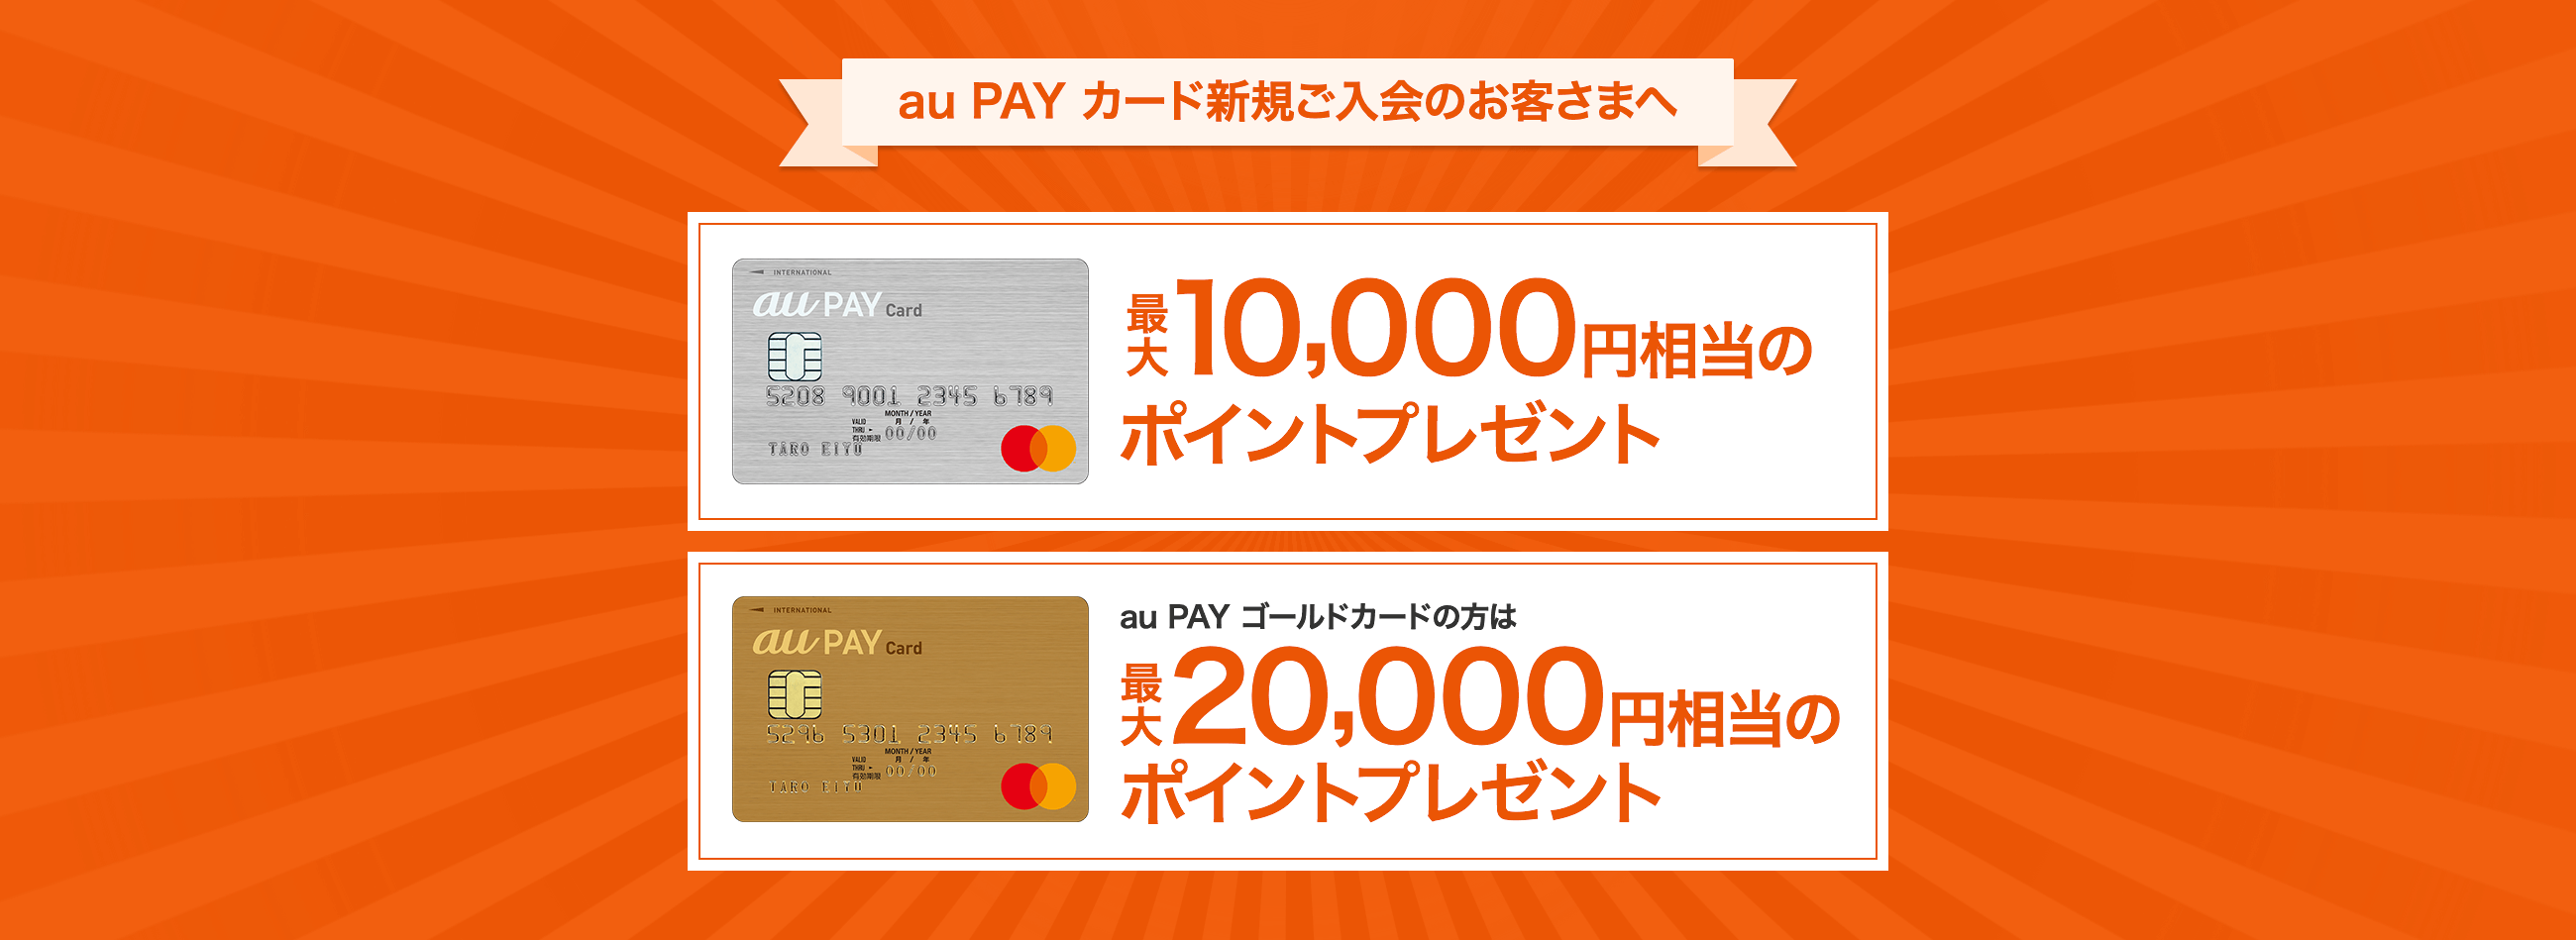 au PAY カード新規ご入会のお客さまへ 最大10,000円相当のポイントプレゼント au PAY ゴールドカードの方は2018年10月1日お申し込み分より 最大20,000円相当のポイントプレゼント